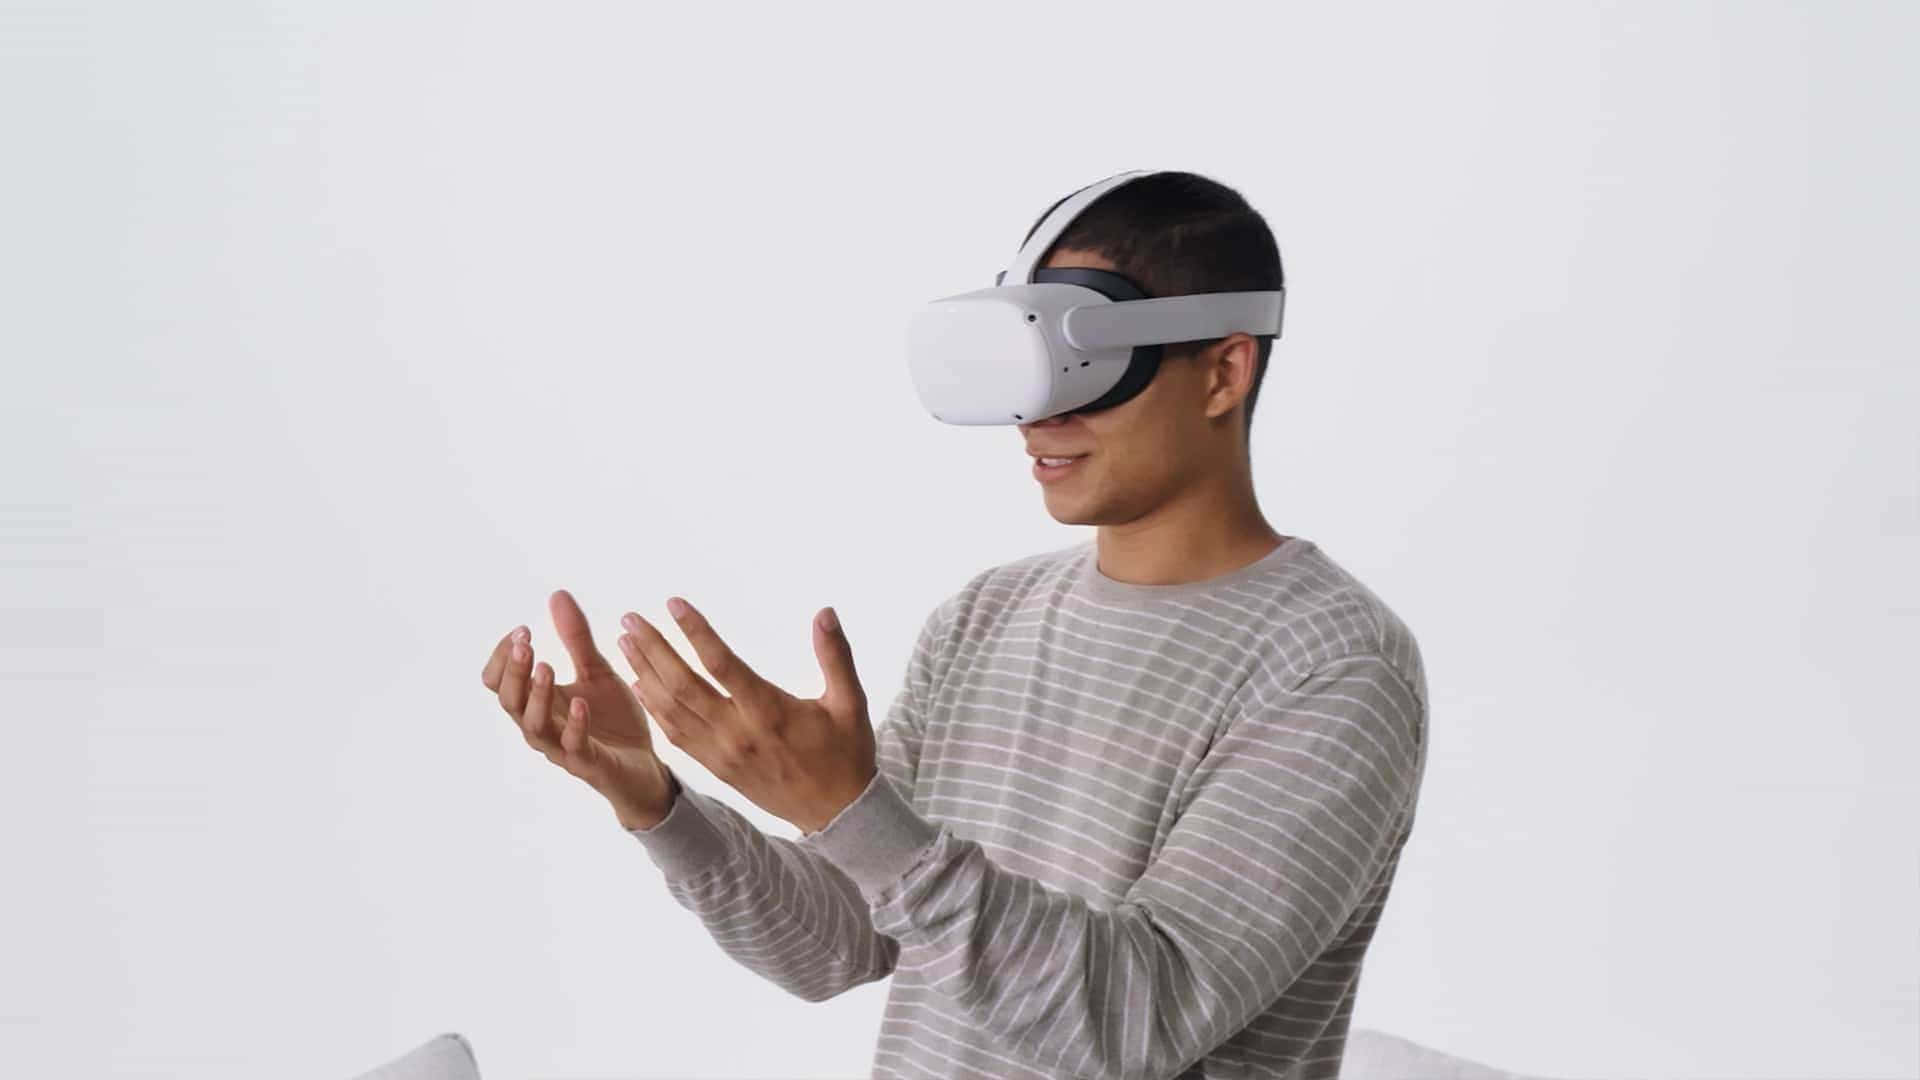 Preparatiper Un'esperienza Di Realtà Virtuale Mozzafiato Con L'oculus Quest 2.